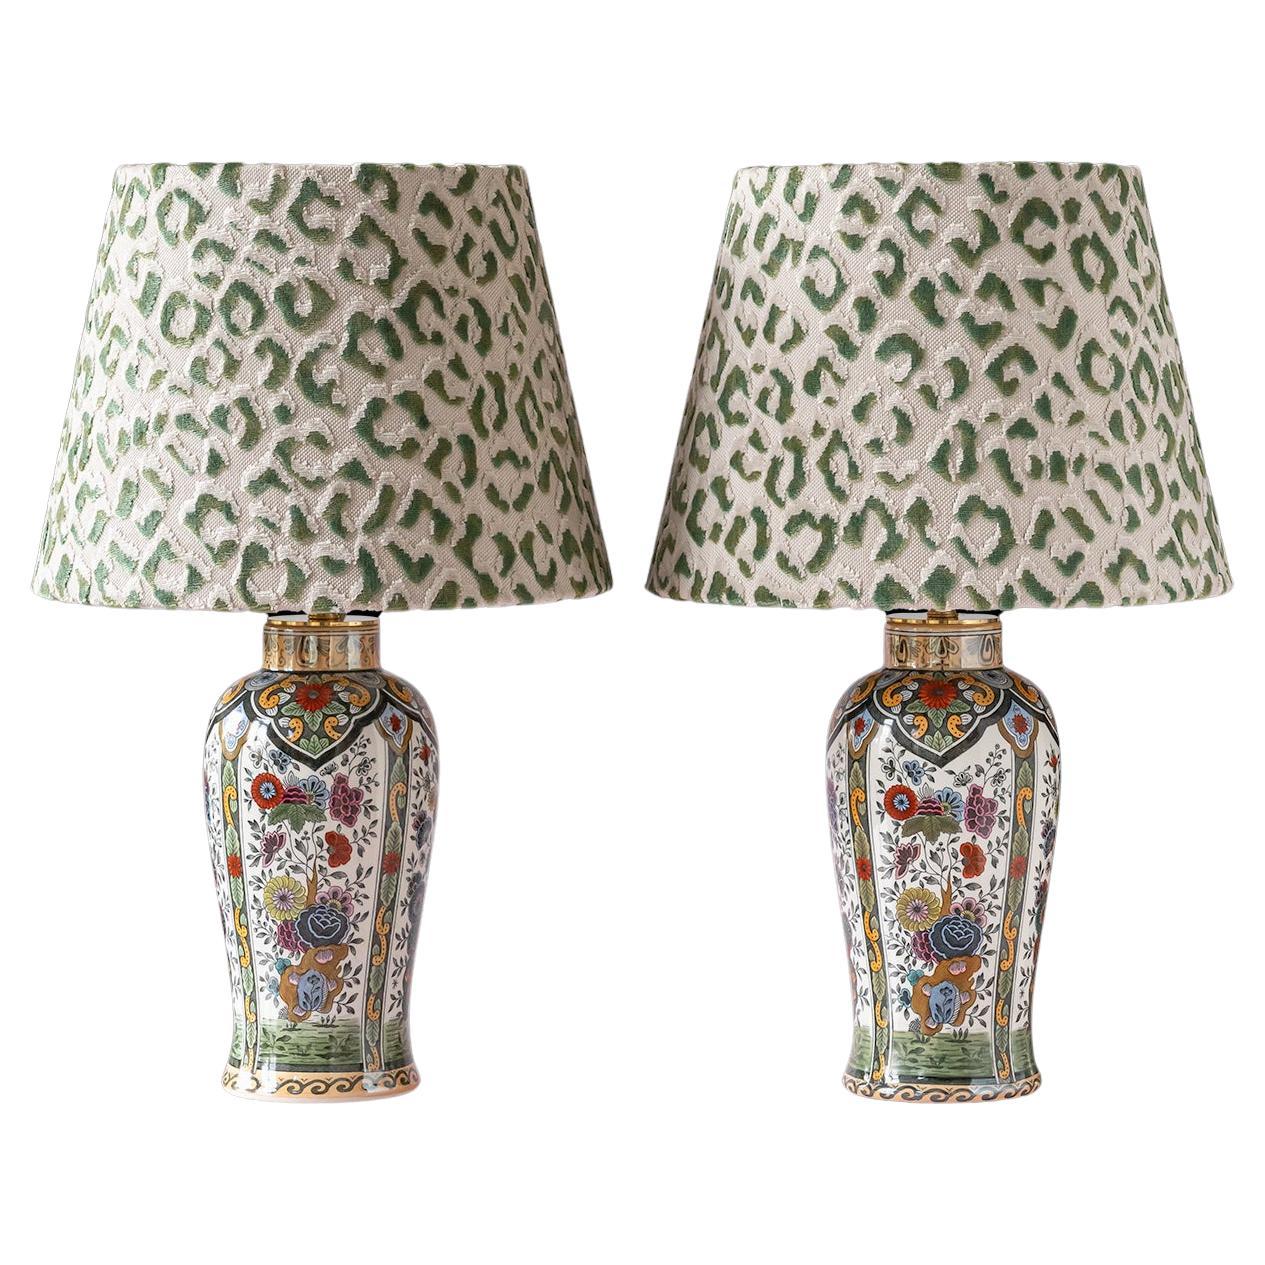 Vintage Petrus Regout De Sphinx Vase Lamps, Leopard Print Shades For Sale